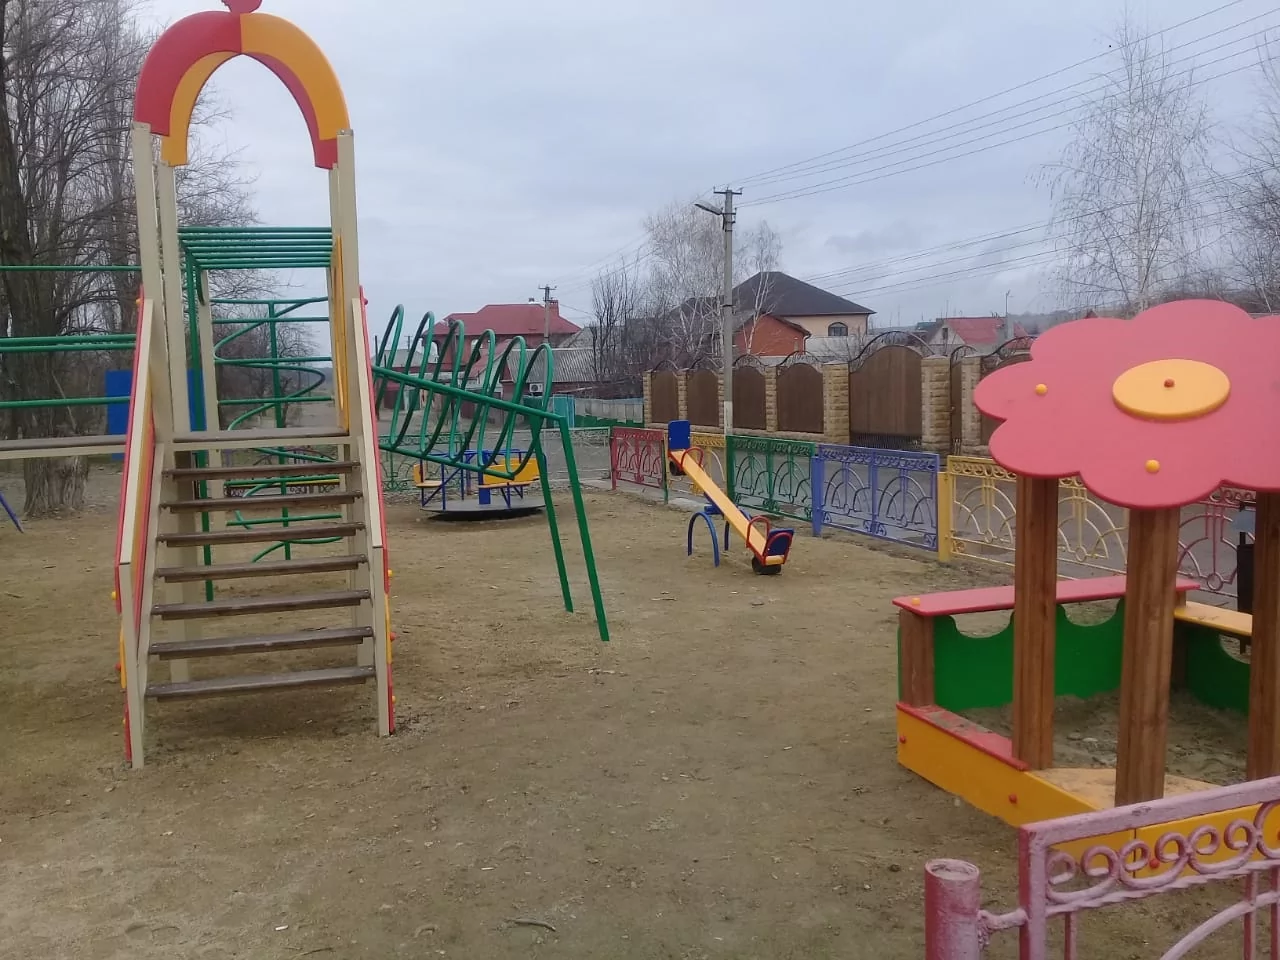 Депутаты ЗСК помогли установить детские площадки в Армавире